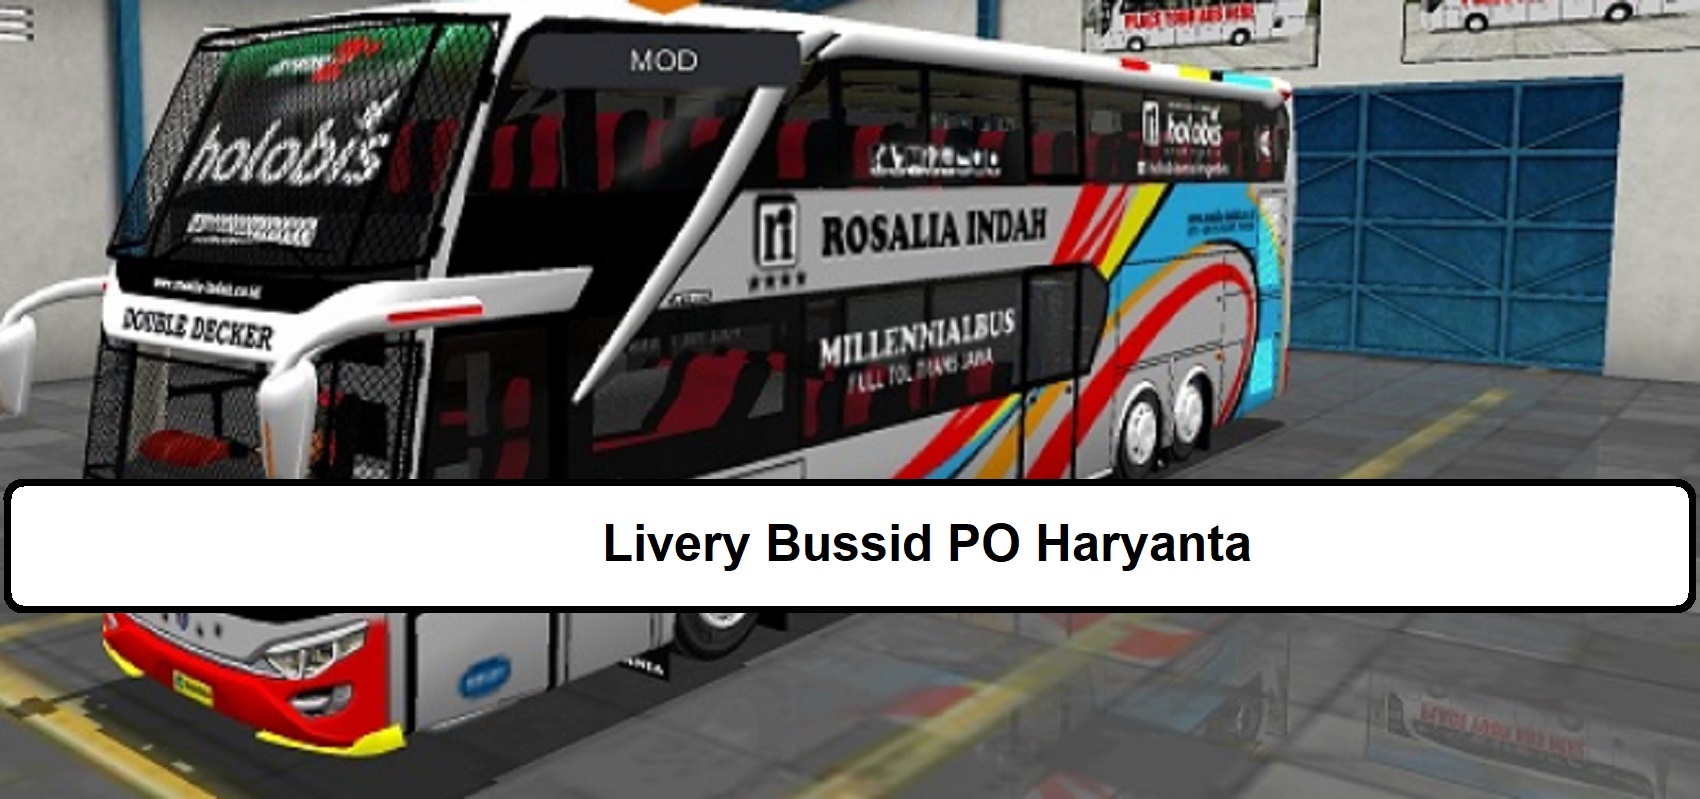 Livery Bussid PO Haryanta